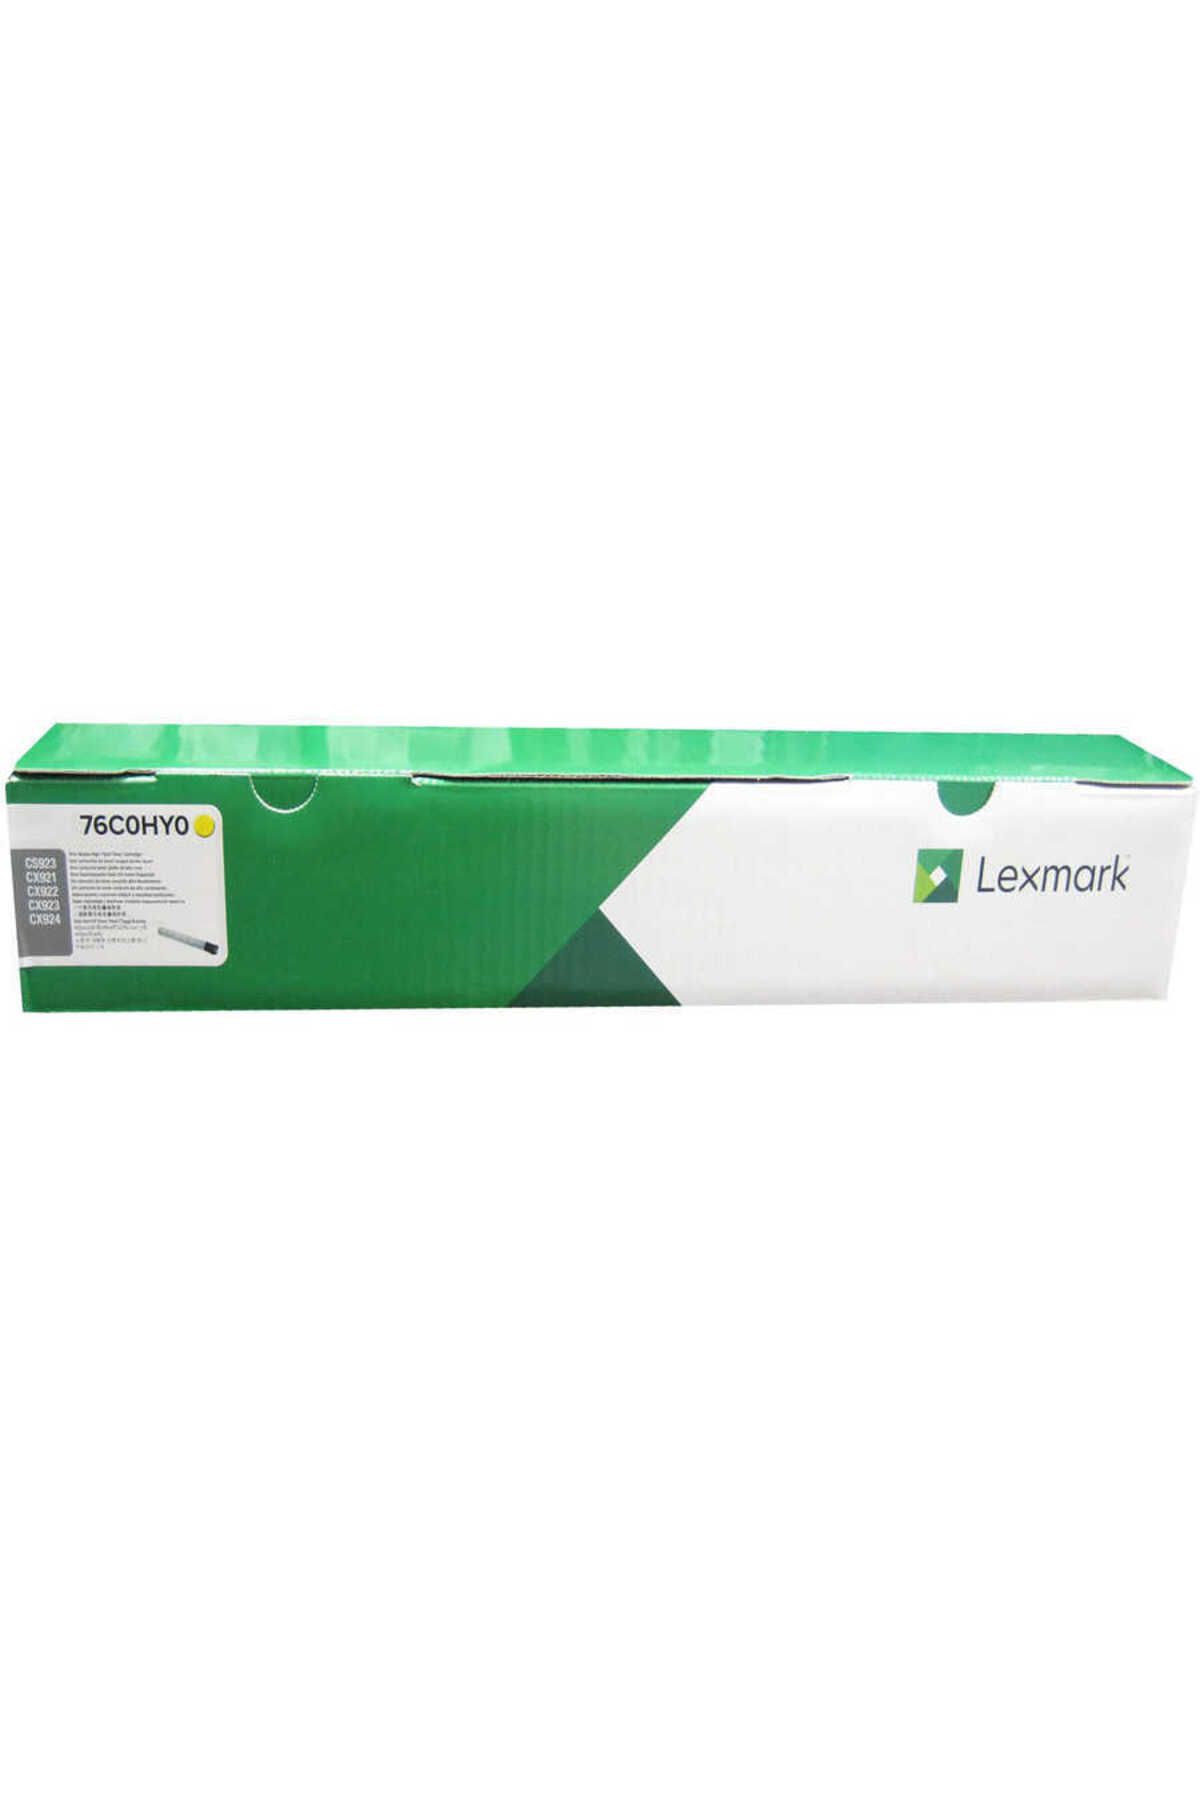 Lexmark Cx921-76c0hy0 Muadil Sarı Toner Yüksek Kapasiteli